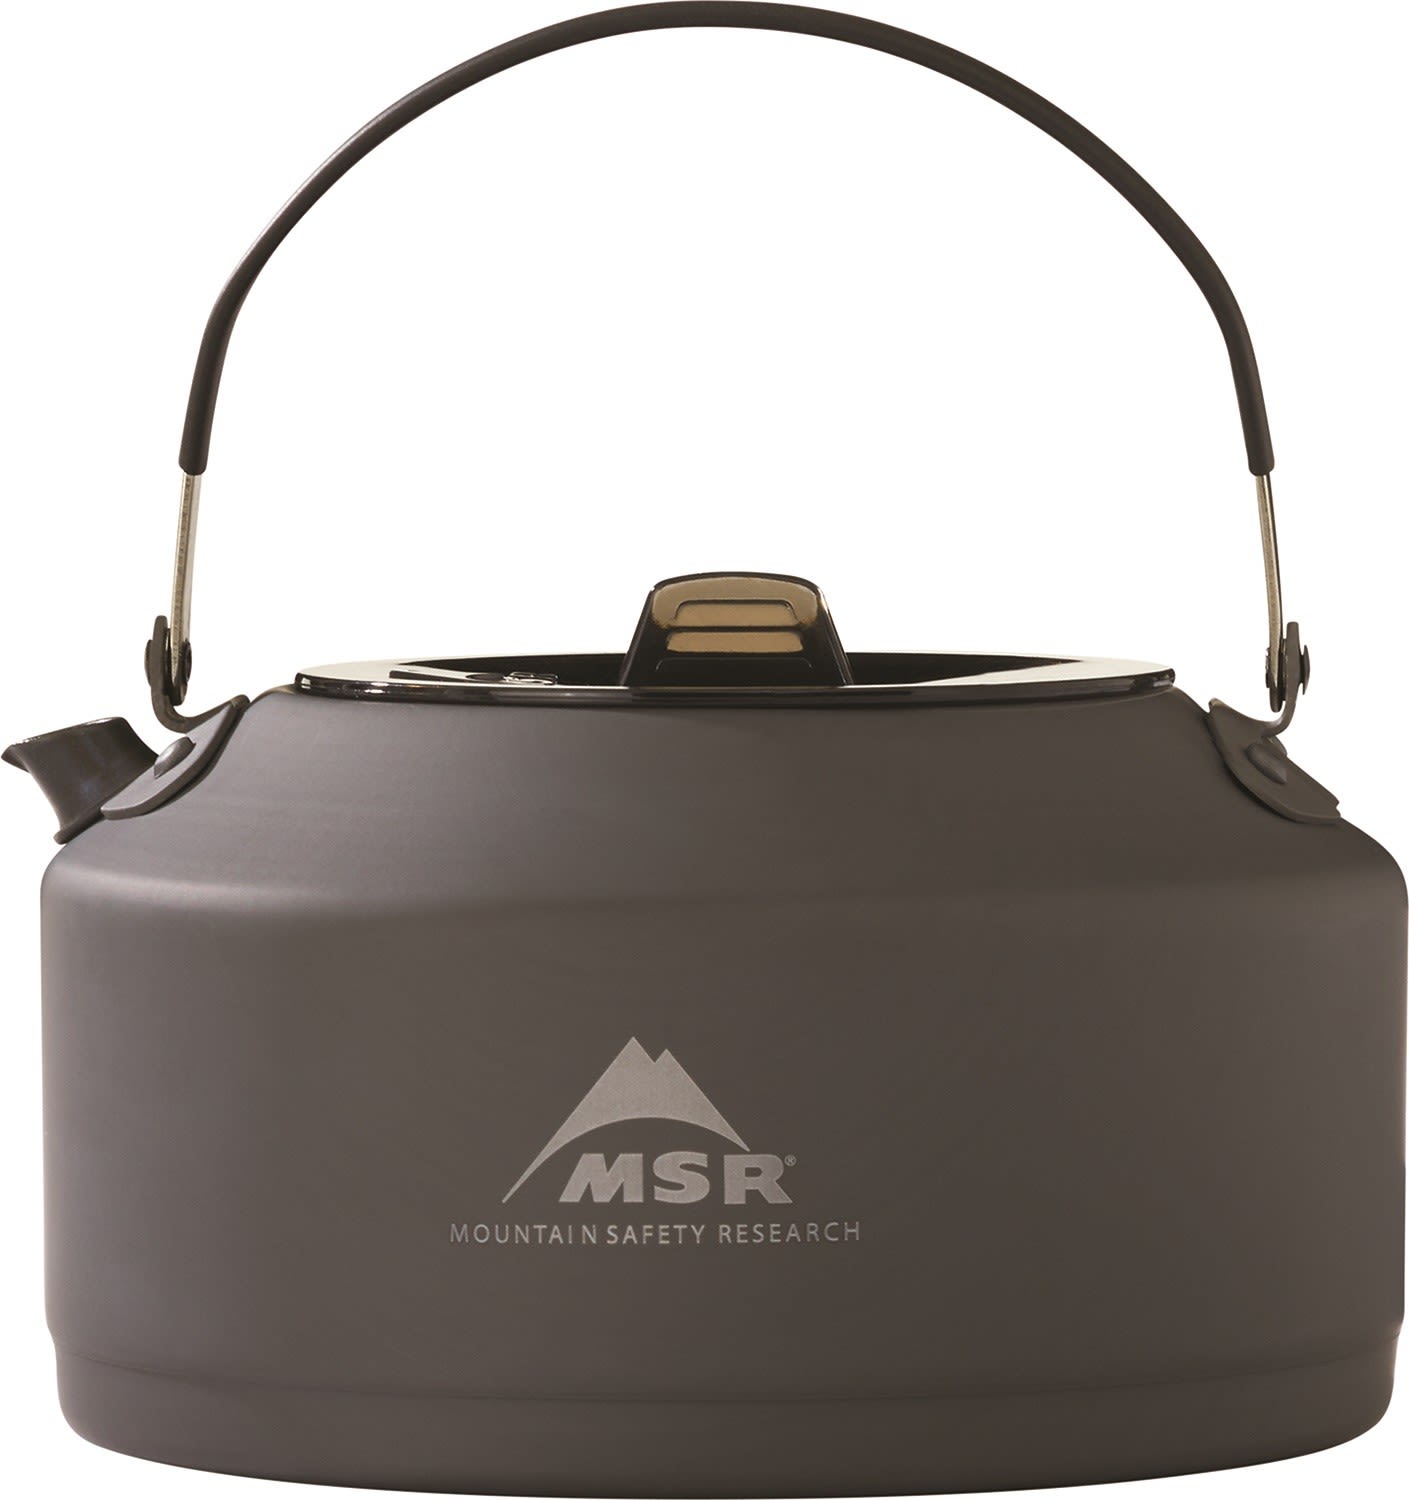 MSR Pika 1L Teapot Grau- Geschirr und Besteck- Grsse One Size - Farbe Grau unter MSR